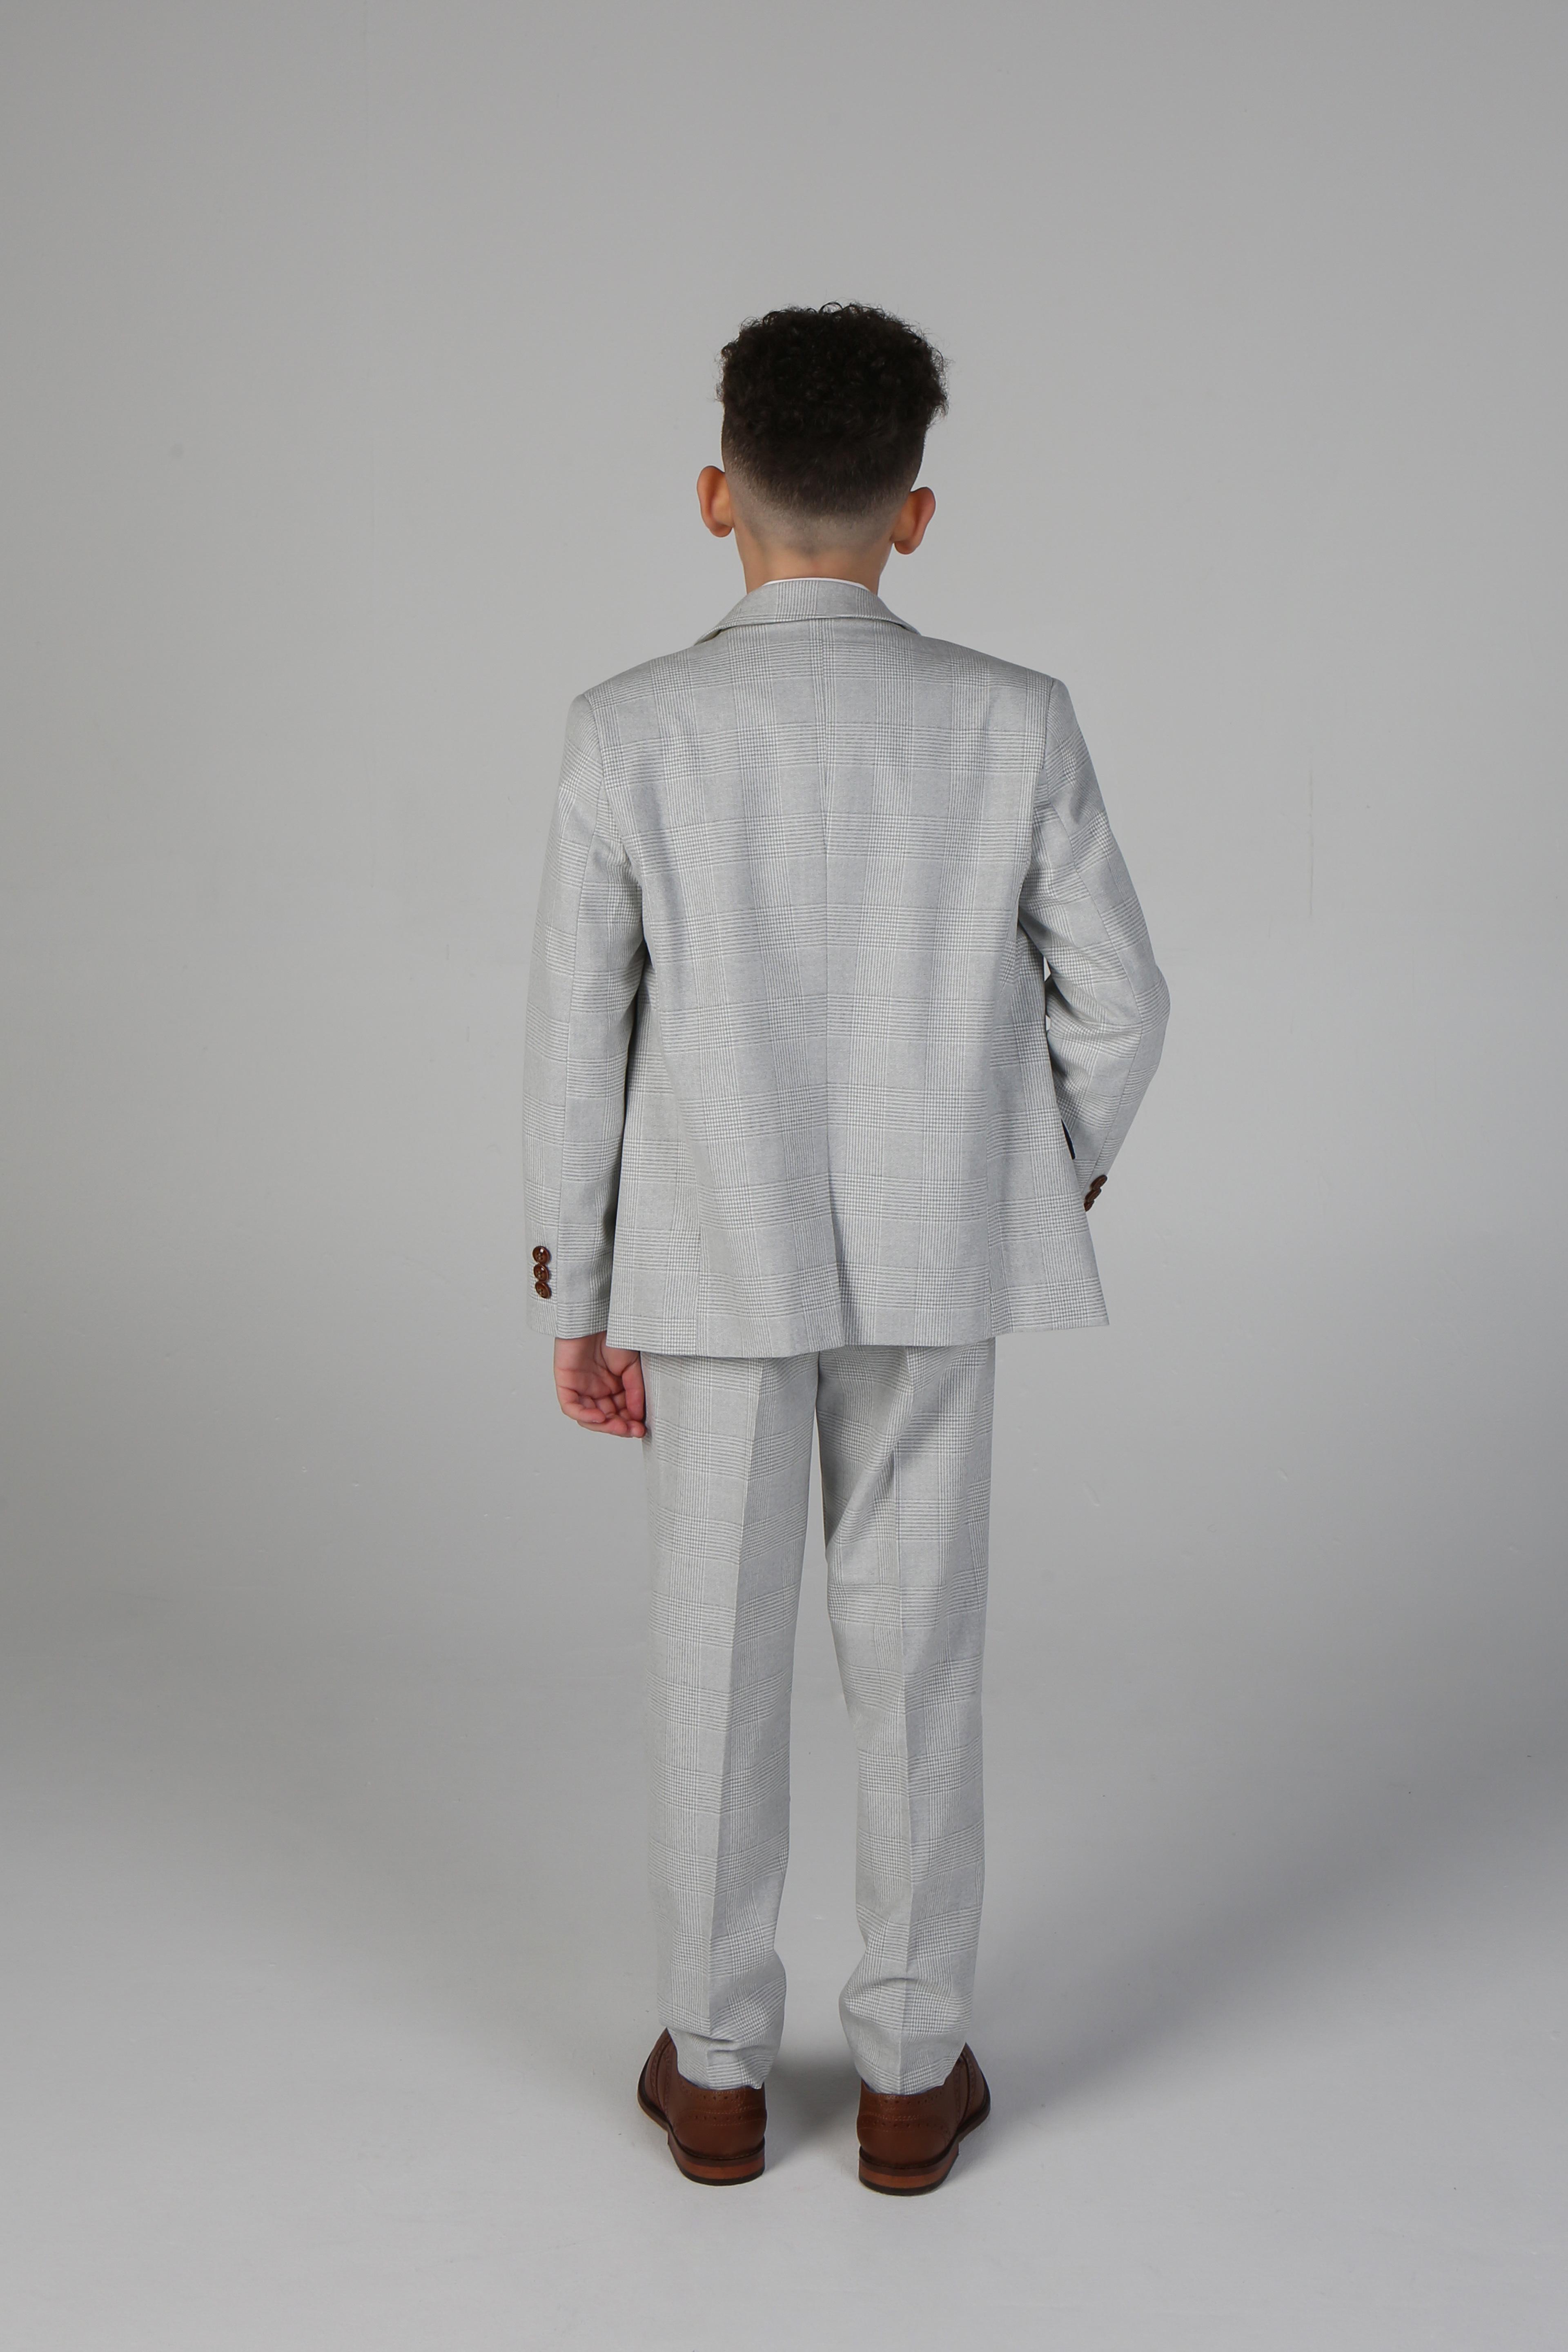 Karierter Anzug für Jungen mit maßgeschneiderter Passform